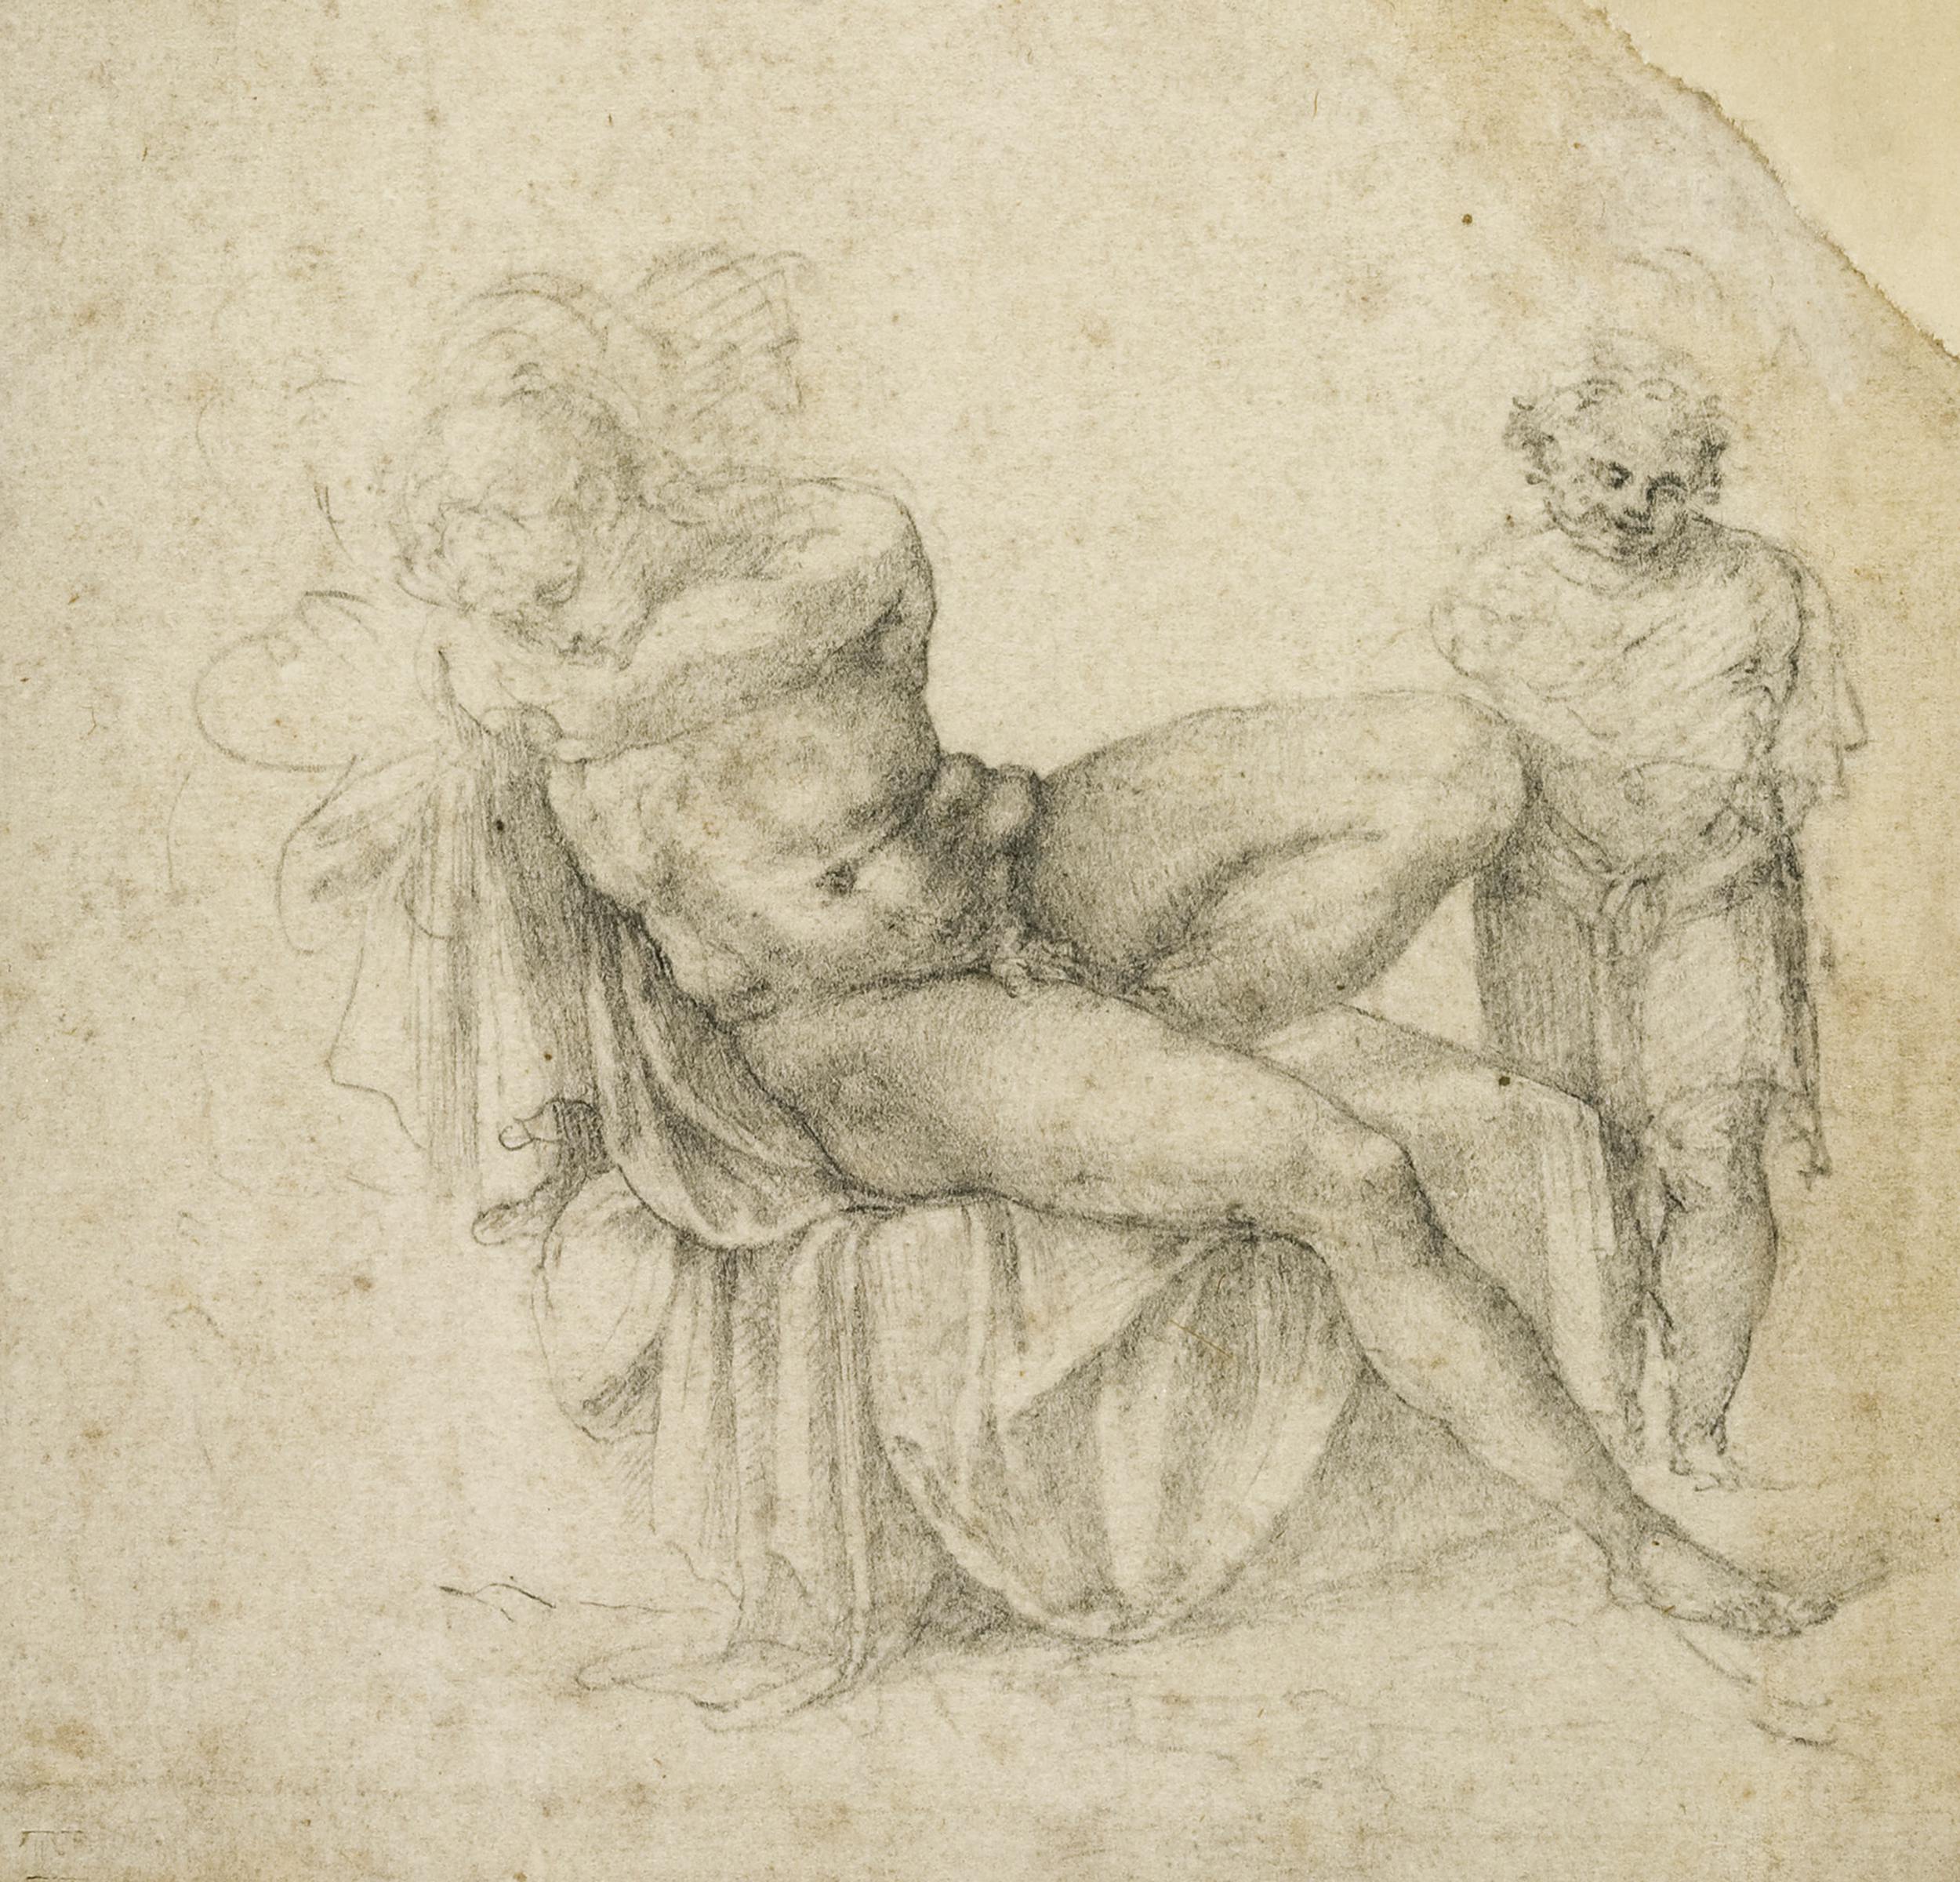 Copia o studio da Michelangelo, Giovane nudo addormentato sopra un sedile, carboncino nero, penna e inchiostro bruno, Frankfurt am Main, Städel Museum.